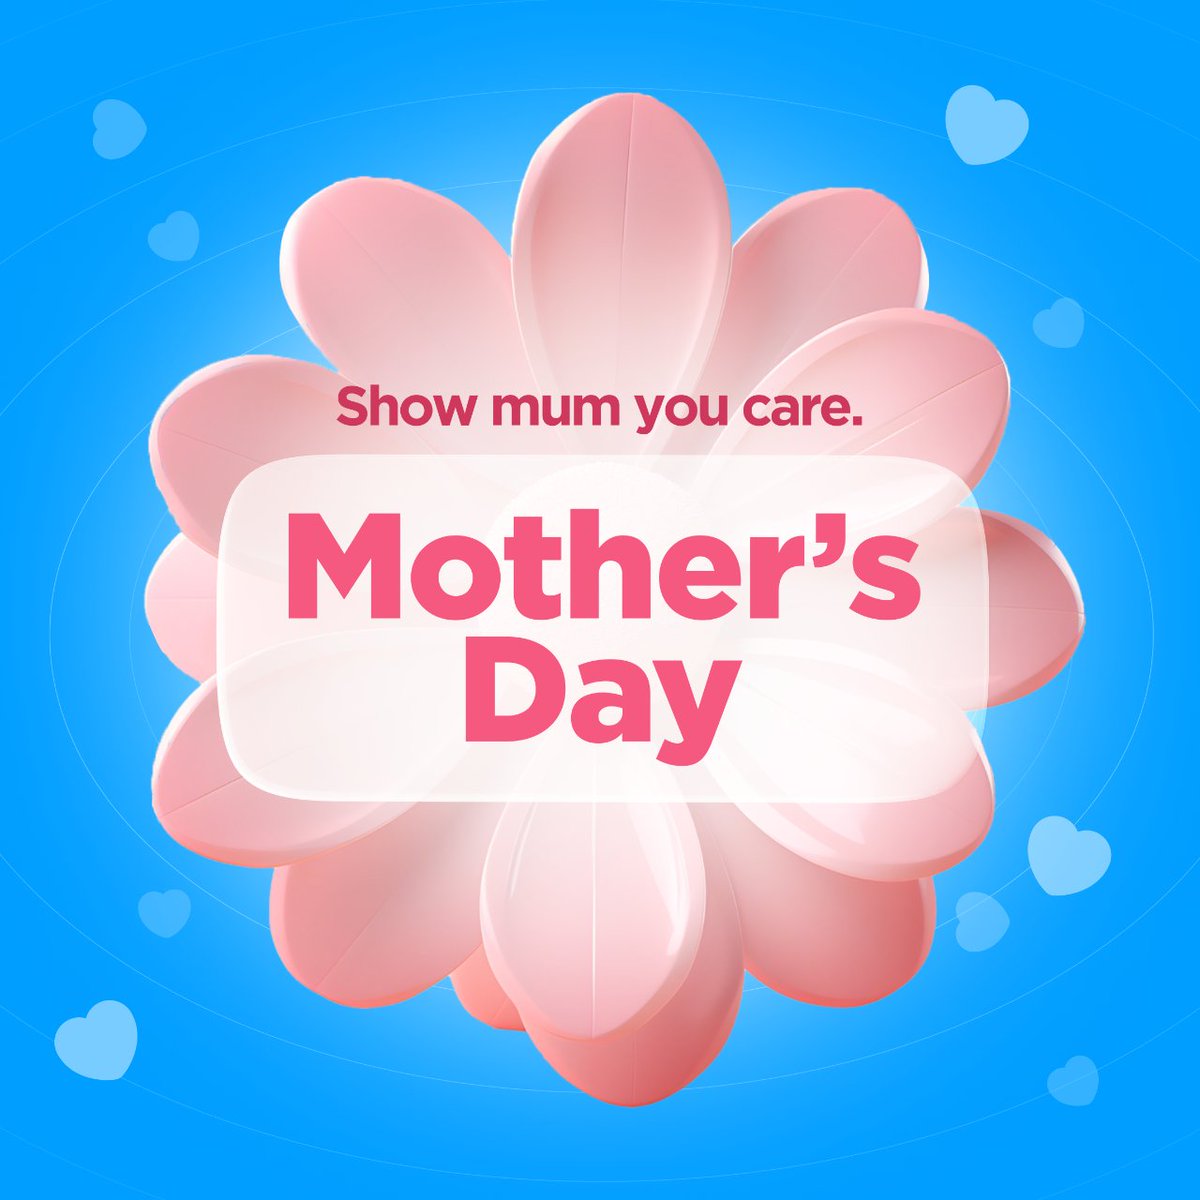 Mum deserves royal treatment! ✨ Order her gift & Bearer delivers fast & safe.
#Bearer #FlowerDelivery #Mum #Mother #Gift  #MothersDay #MothersDayFlower #FlowerDelivery #CourierService #DeliveryService #Delivery #DoorToDoorDelivery #MelbourneDelivery #Melbourne #SameDayDelivery